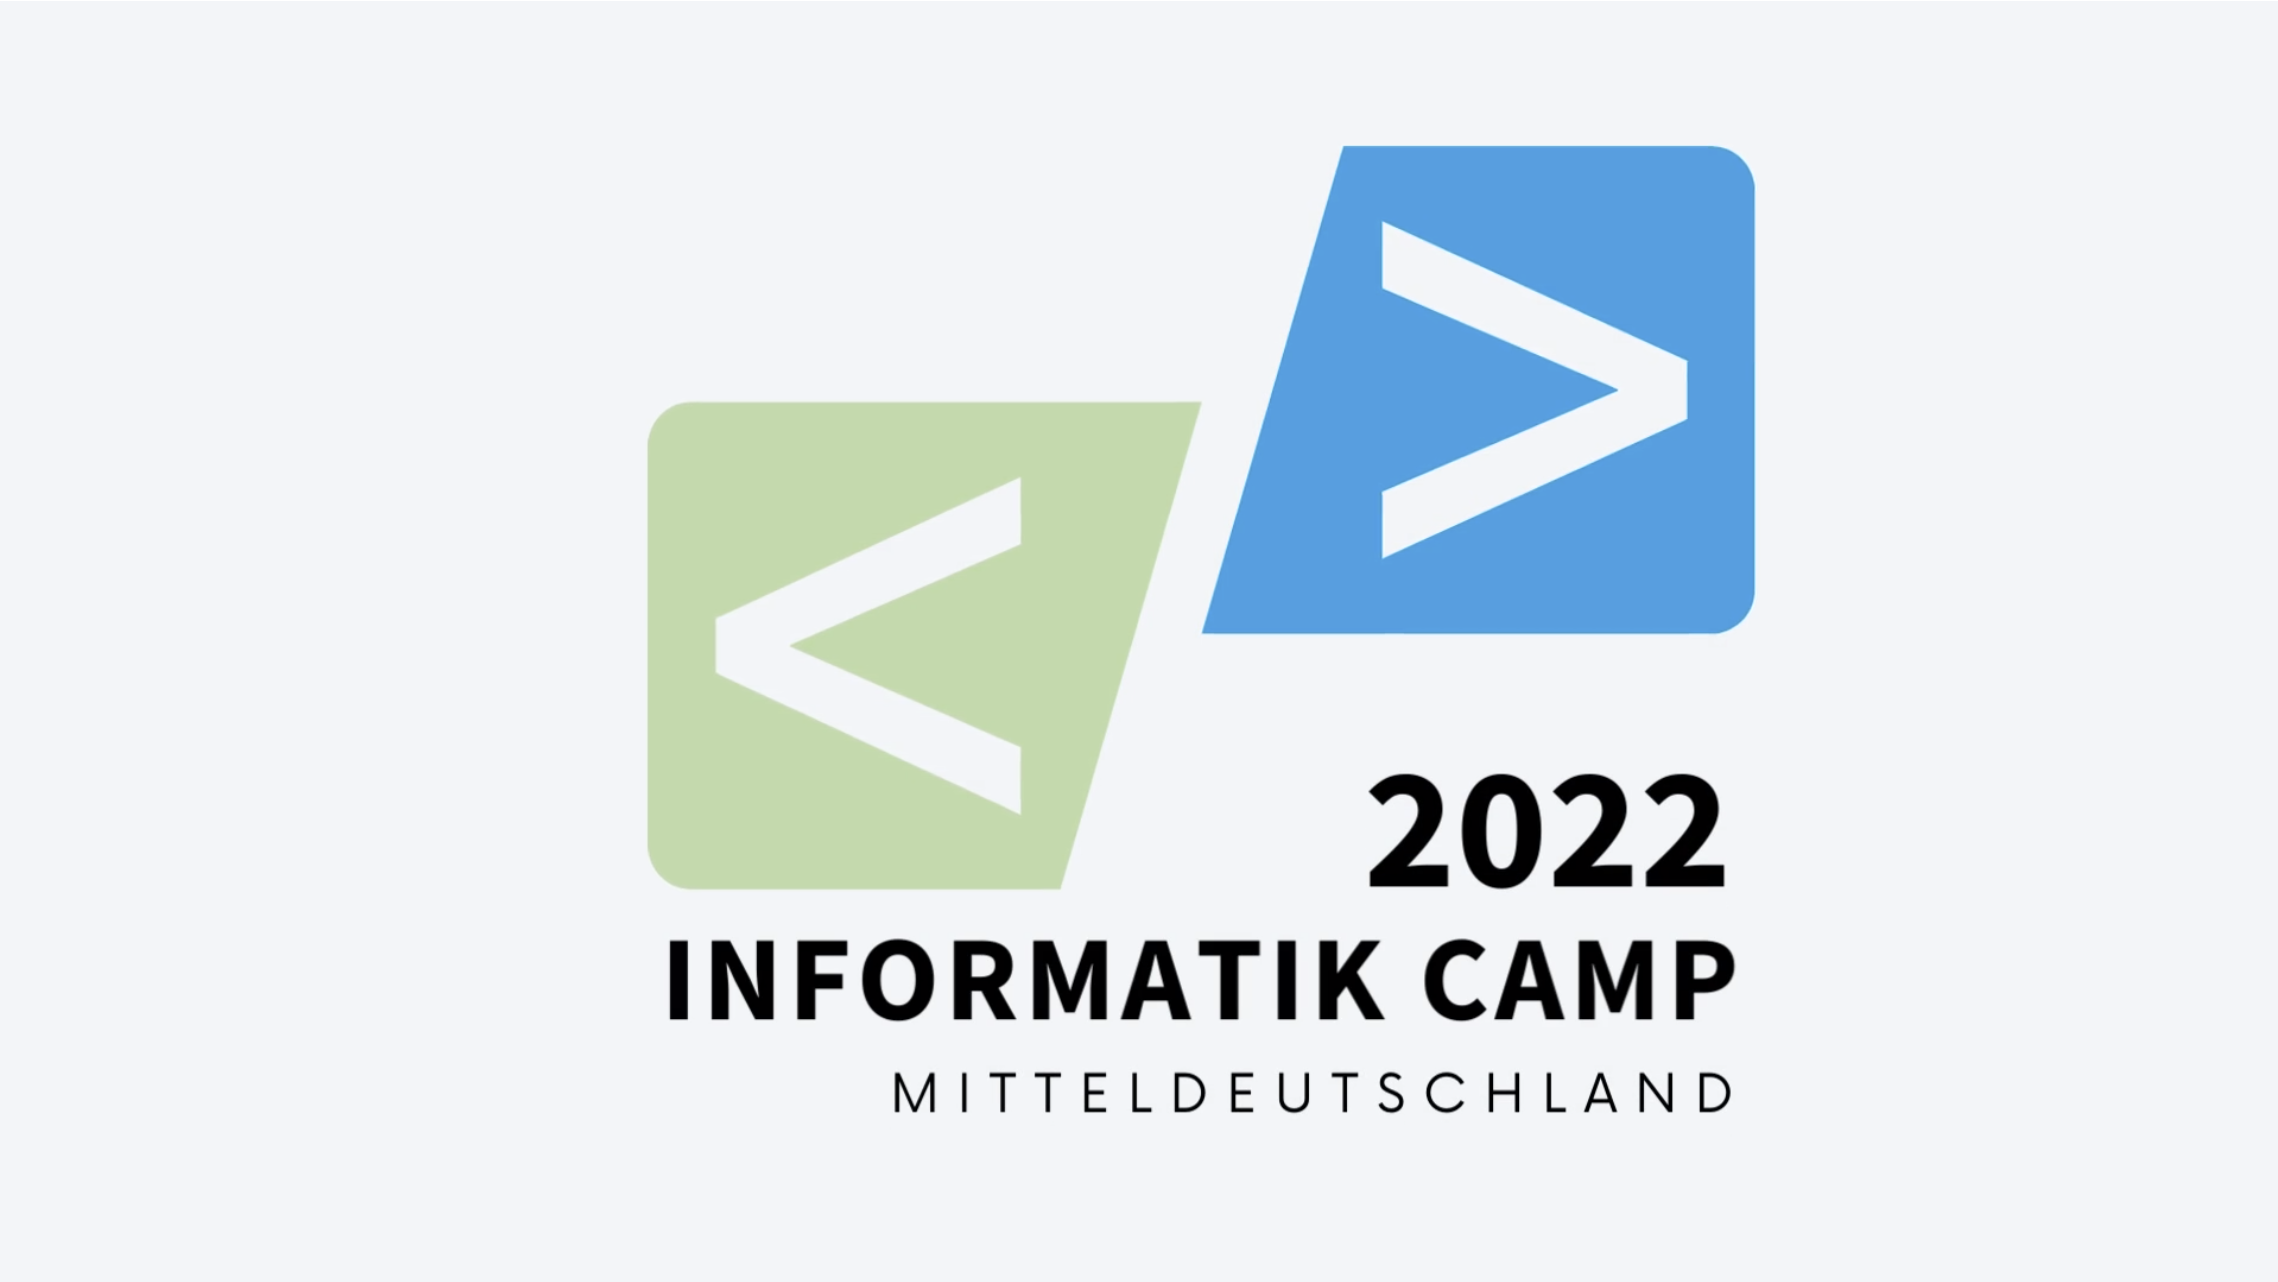 ​INFORMATIK CAMP MITTELDEUTSCHLAND 2022